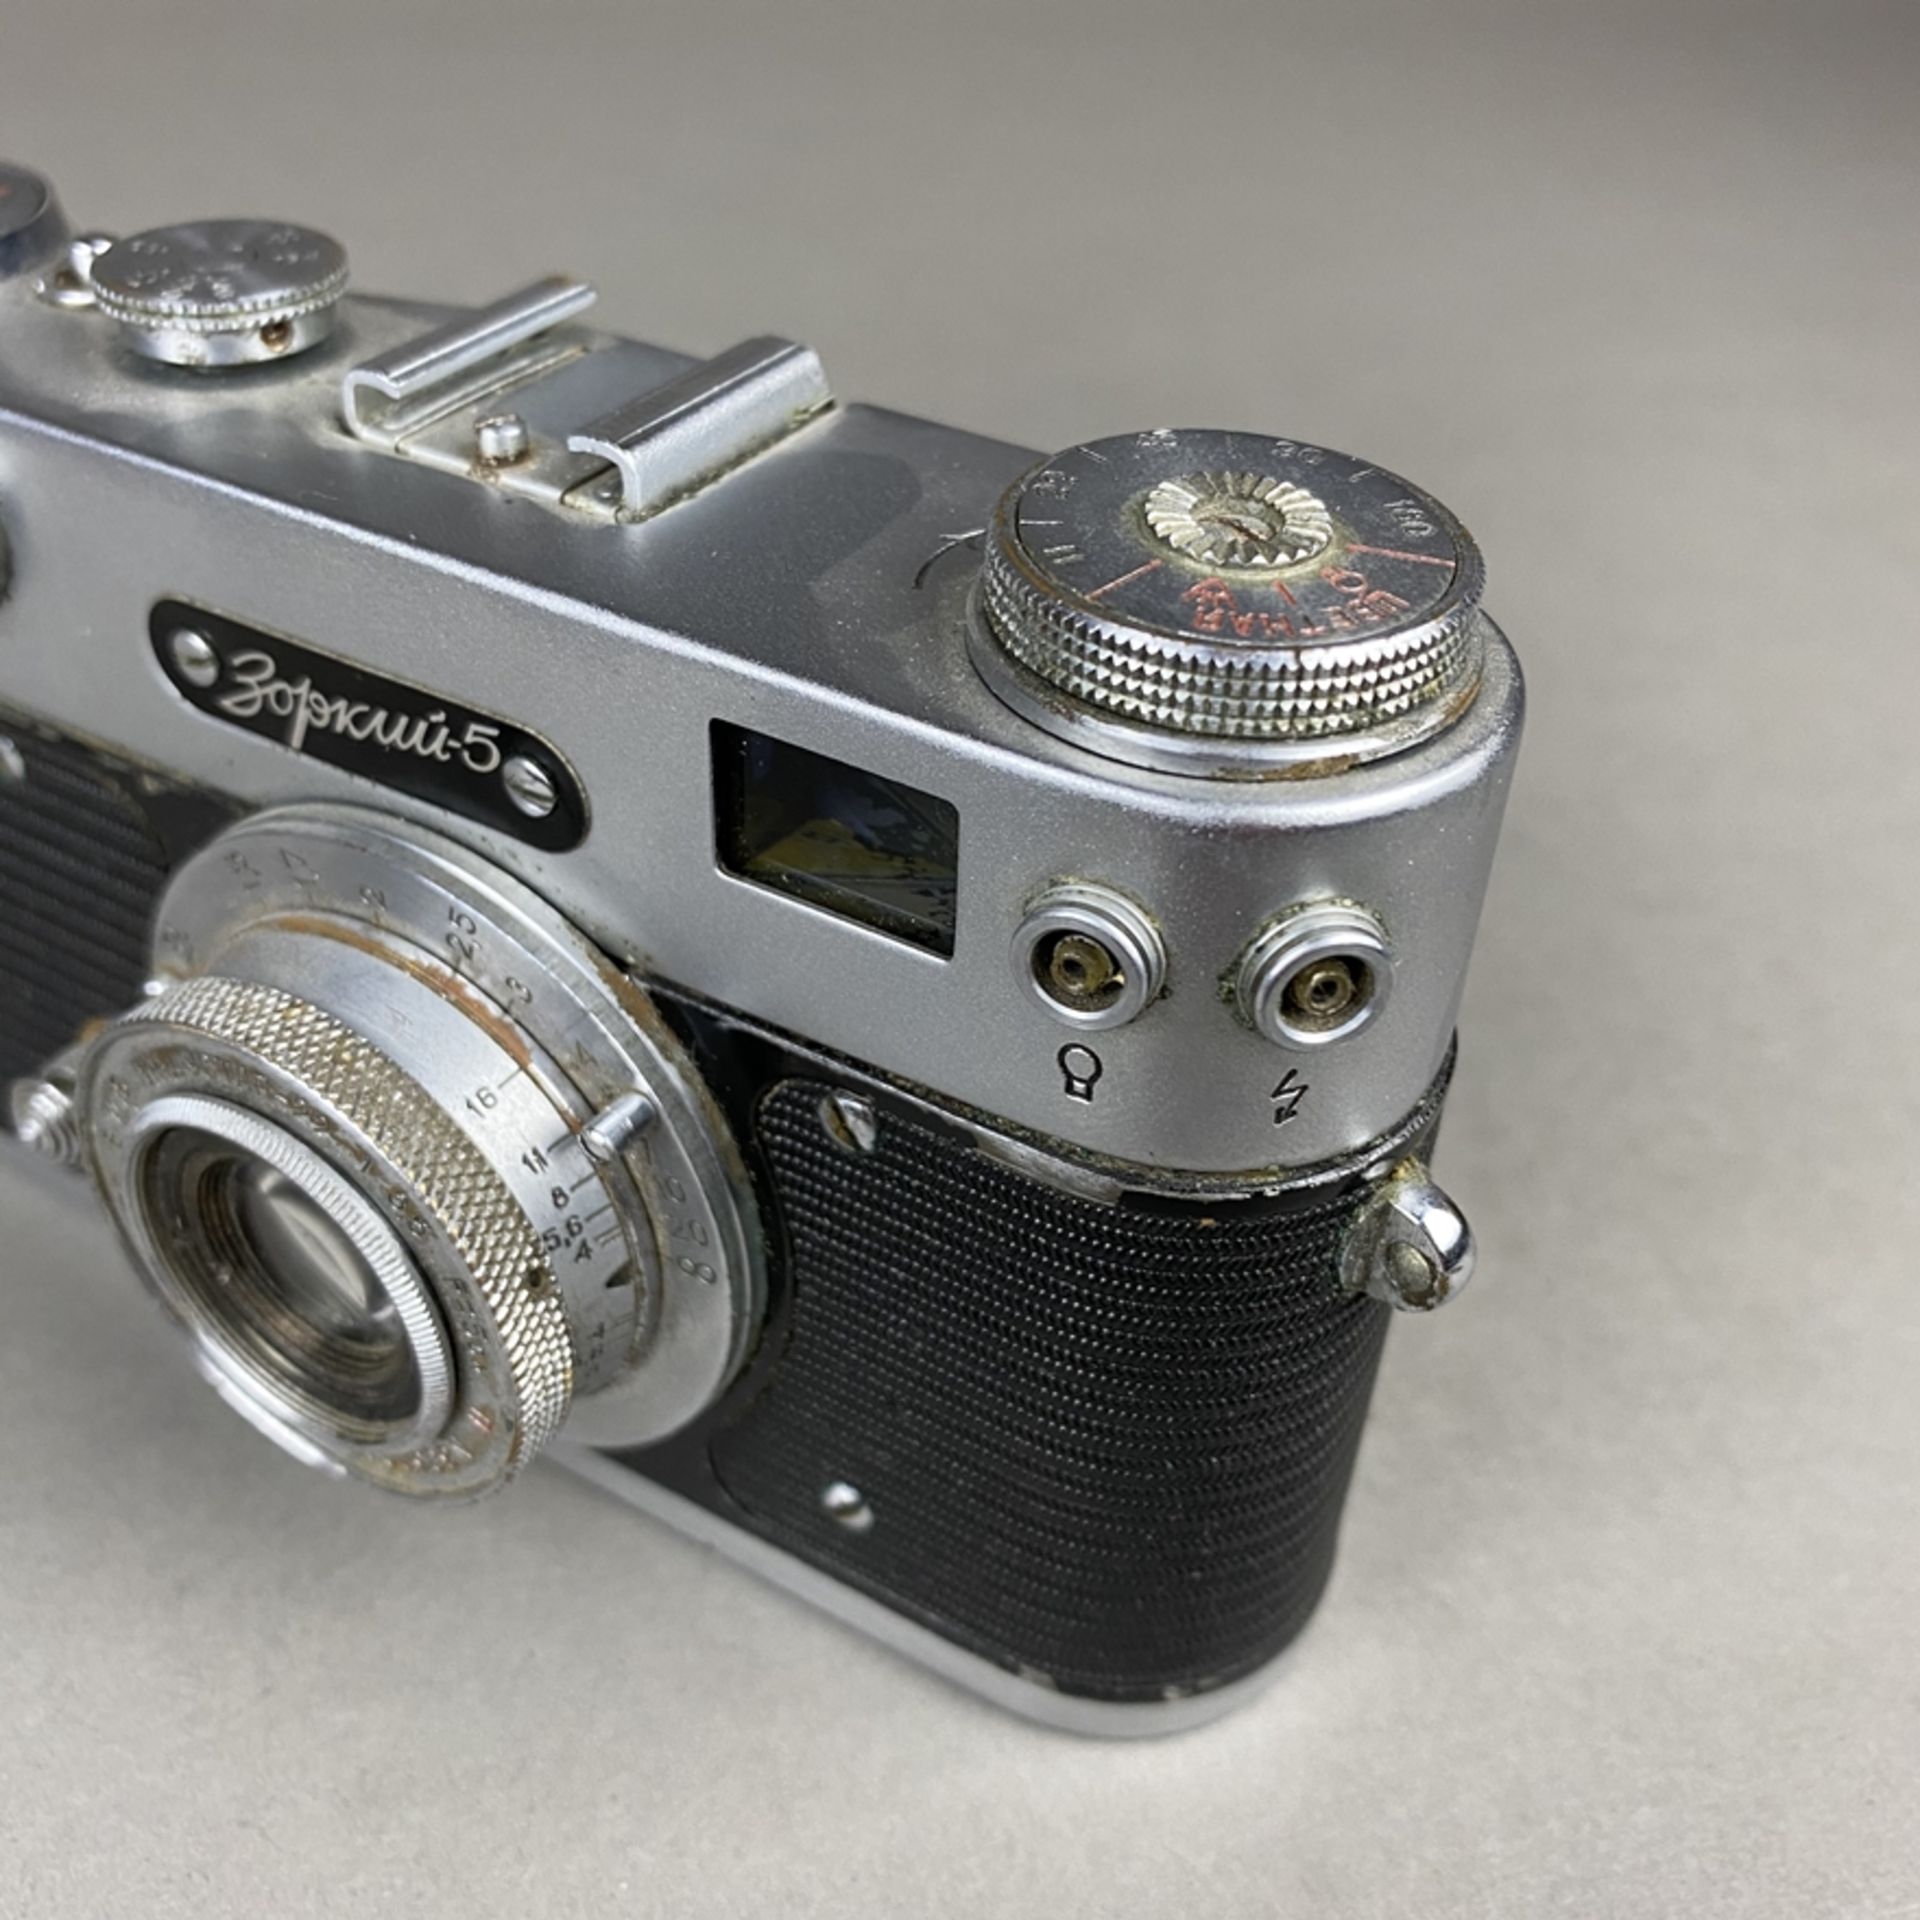 Zorki 5 - sowjetische Kleinbild-Sucherkamera, Gehäusenr. 59001972, Objektiv Industar 22, 1:35, F= - Bild 4 aus 7